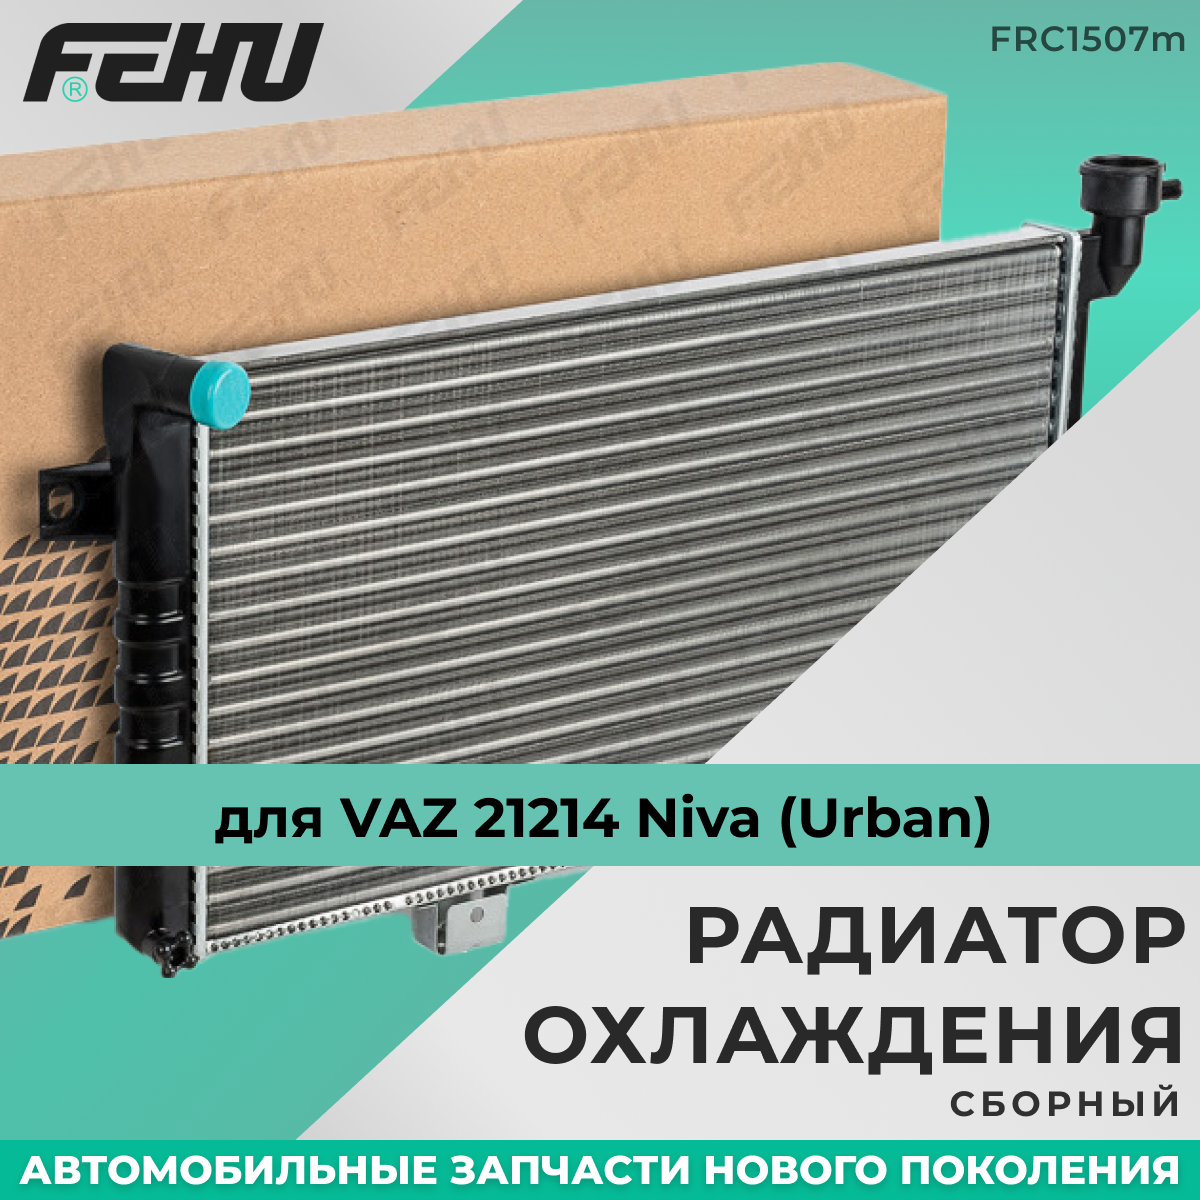 Радиатор охлаждения FEHU (феху) сборный VAZ 21214 Niva (Urban) арт. 212141301012